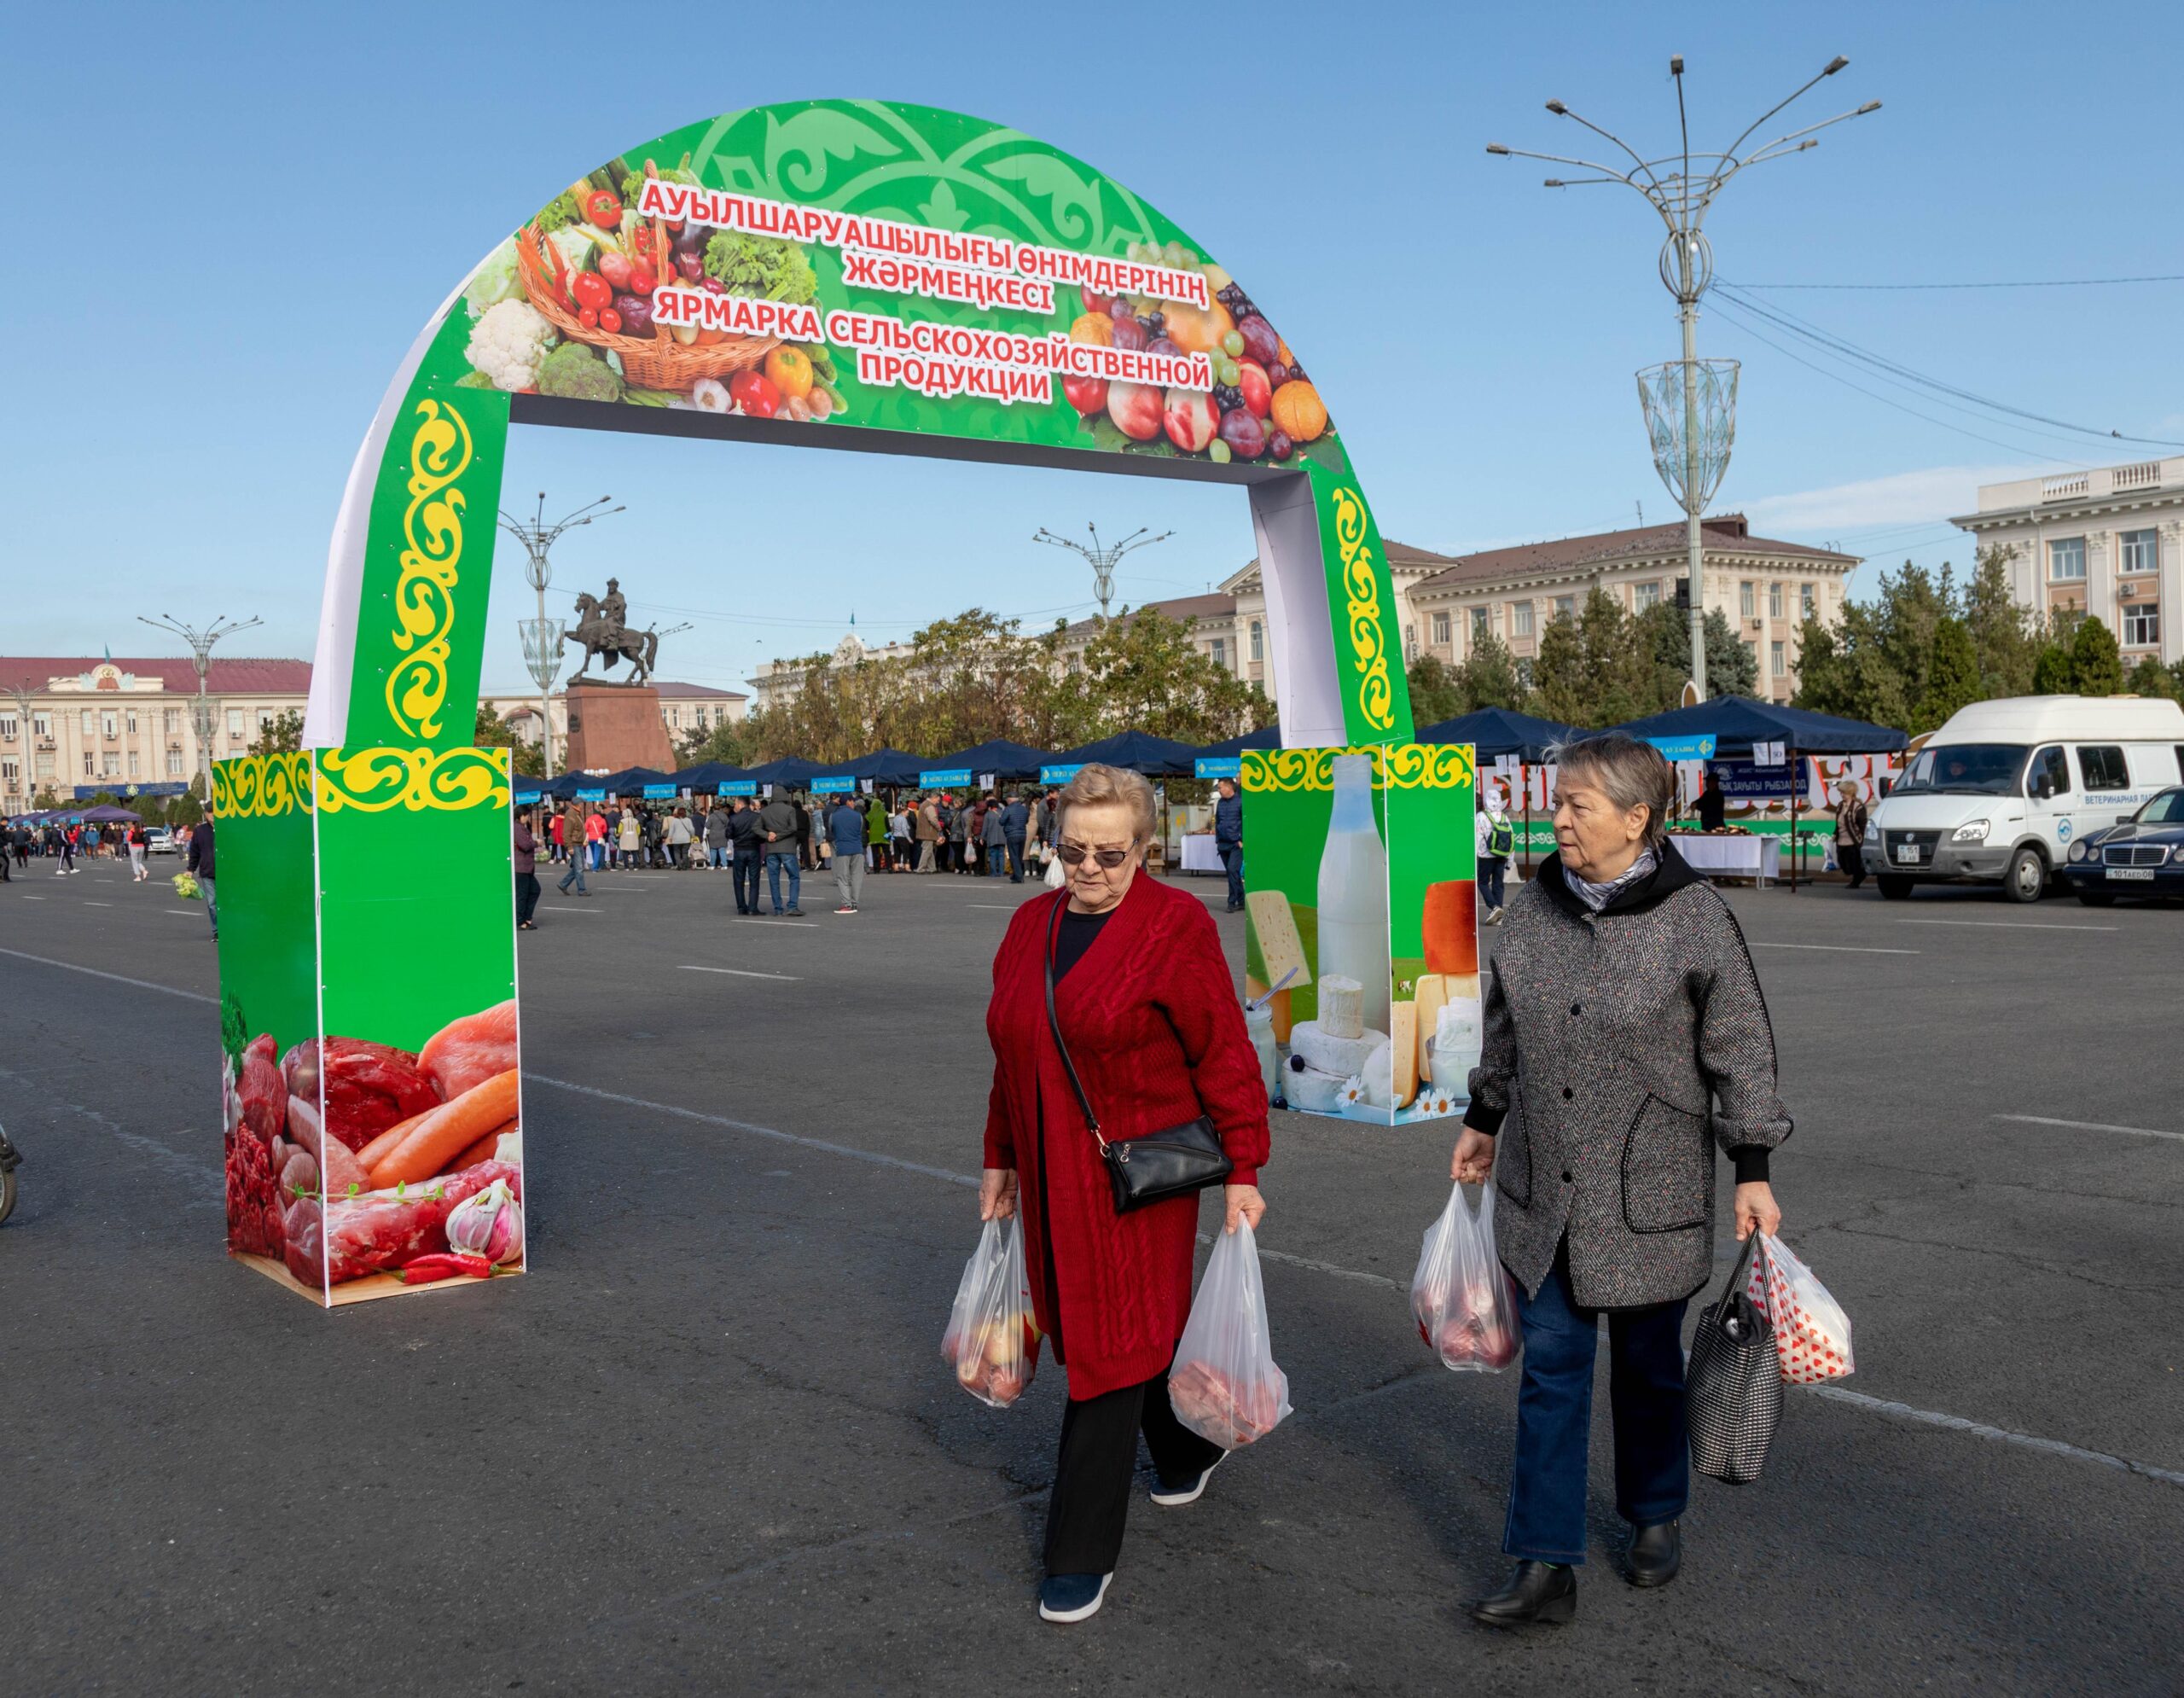 Свыше 700 тонн сельхозпродукции повезут североказахстанцы на ярмарку в Астану